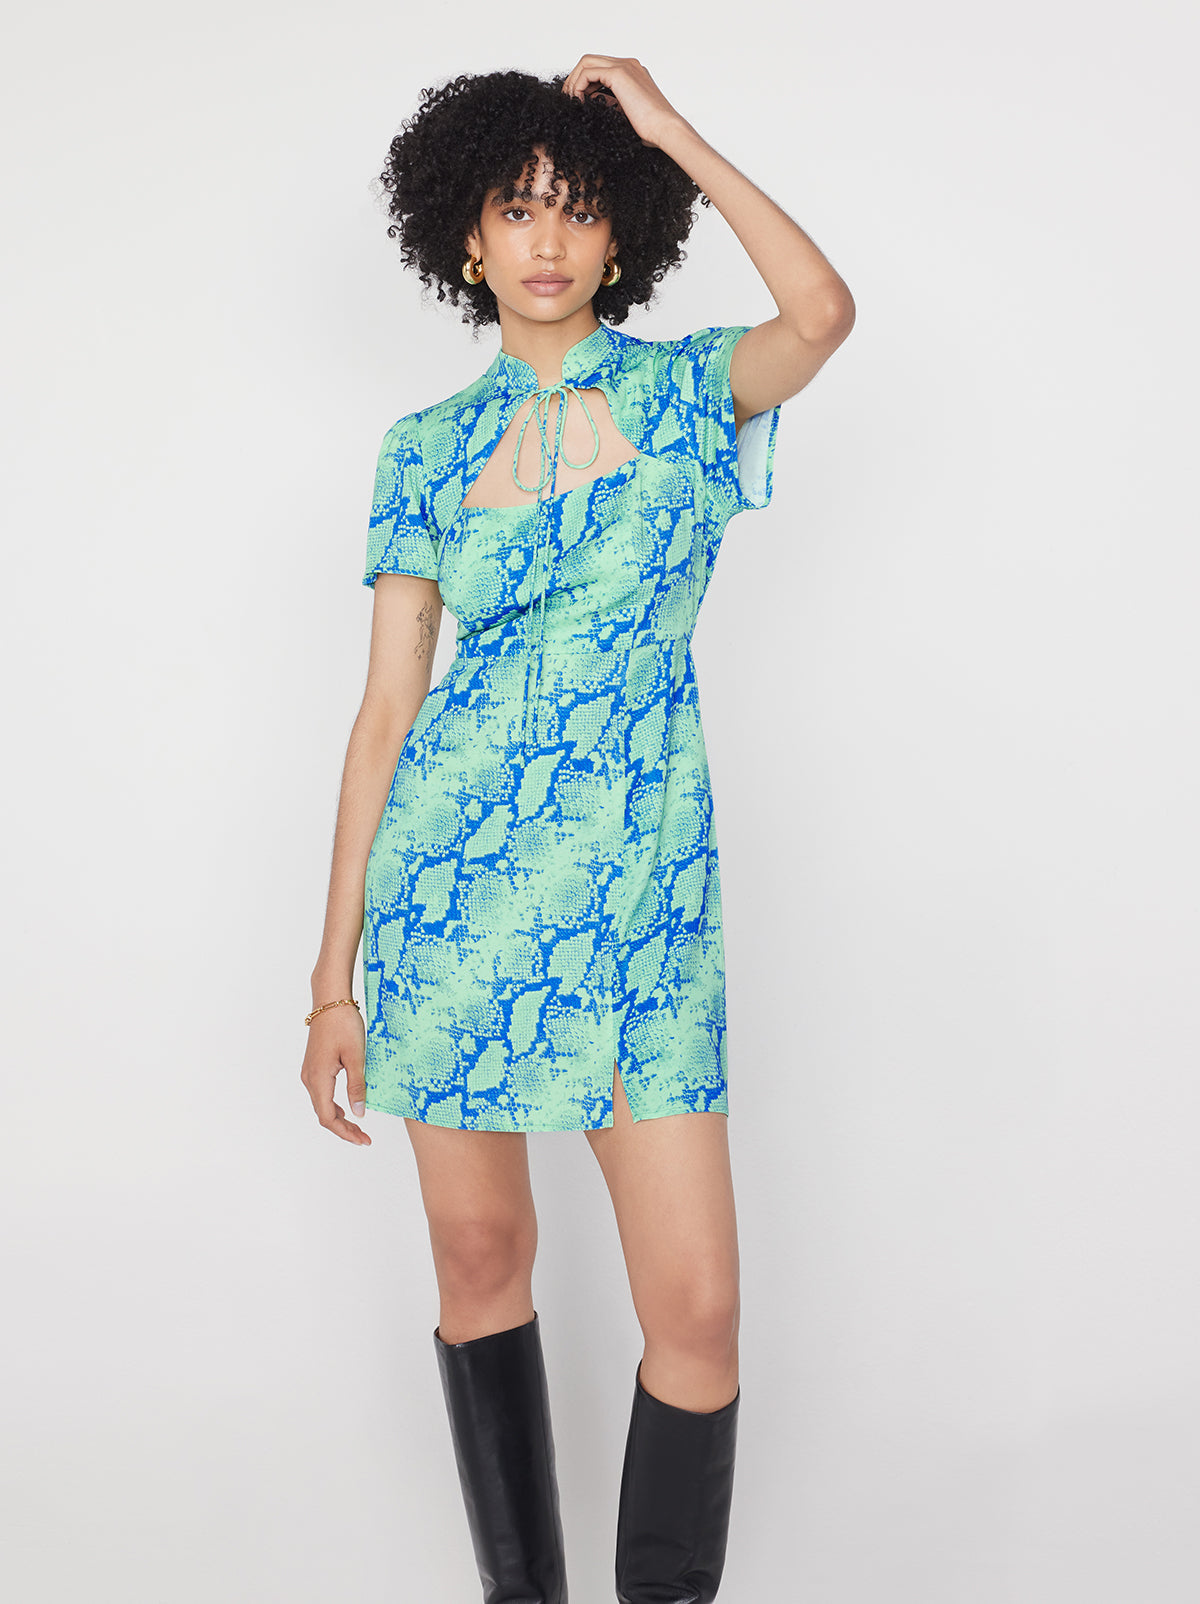 Imogen Blue Snake Print Mini Dress